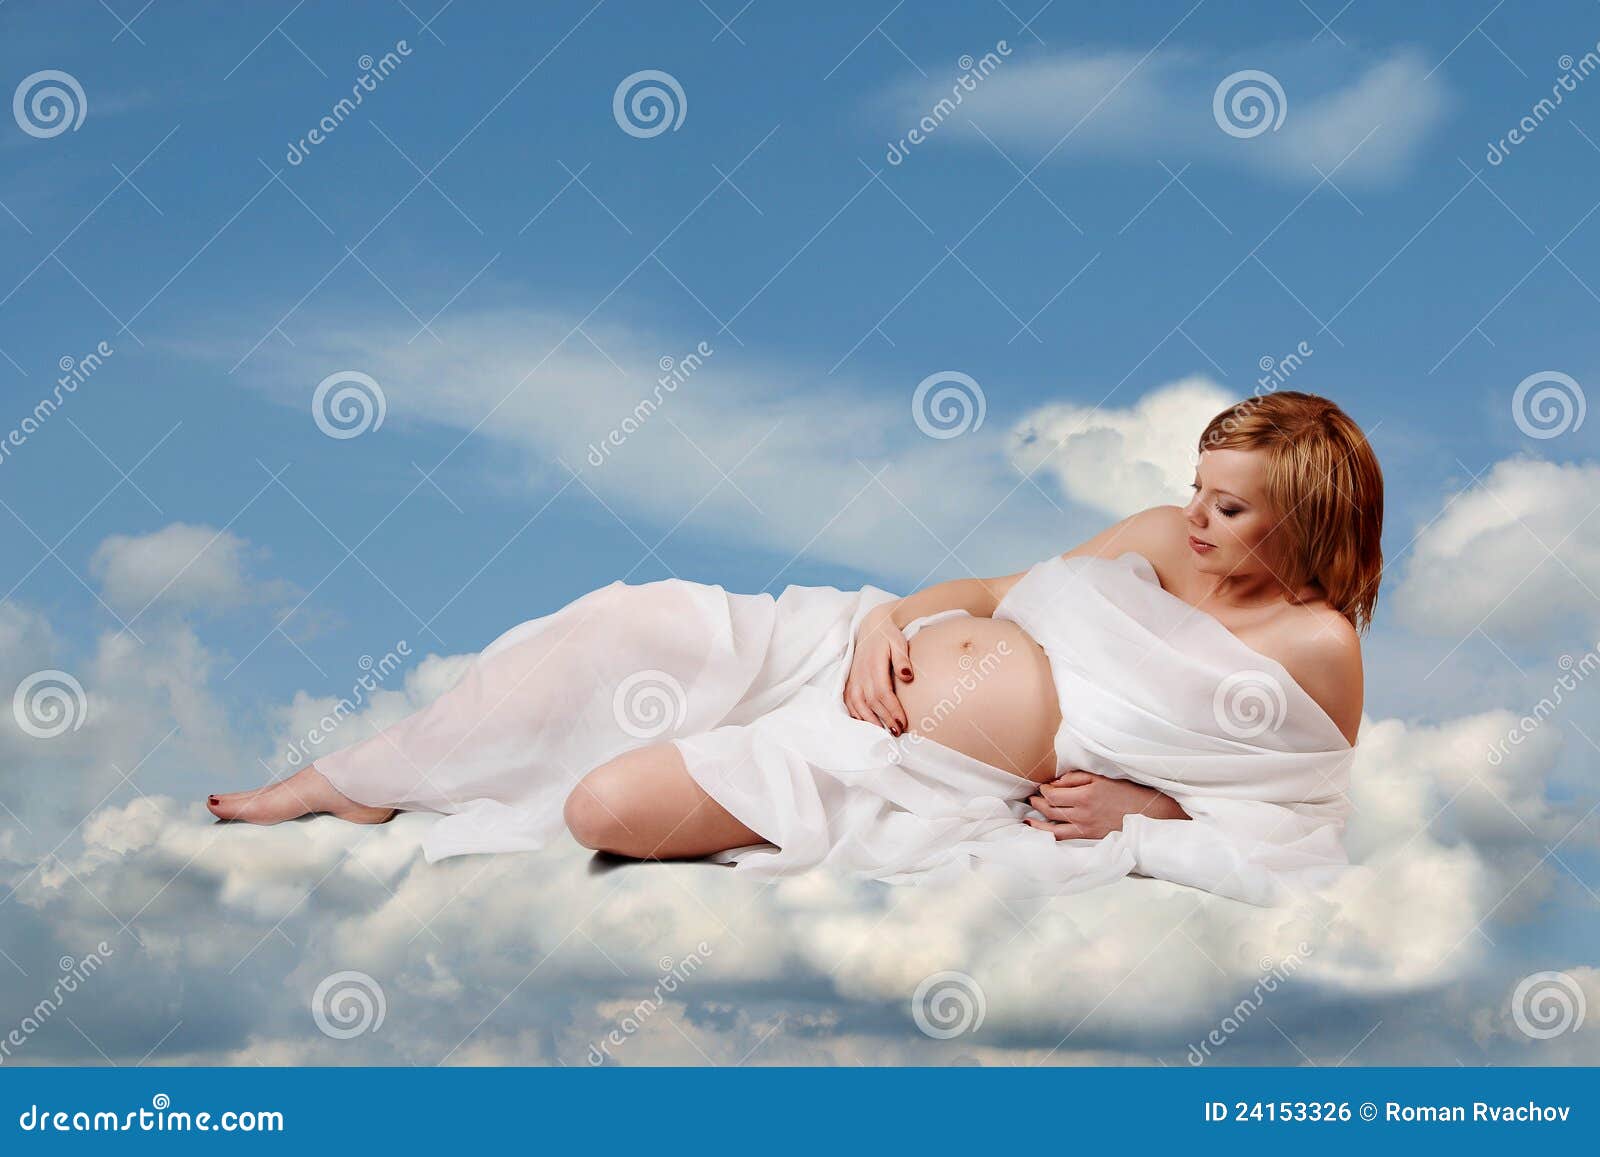 Форум что снится к беременности: Страница не найдена | Форум Woman.ru